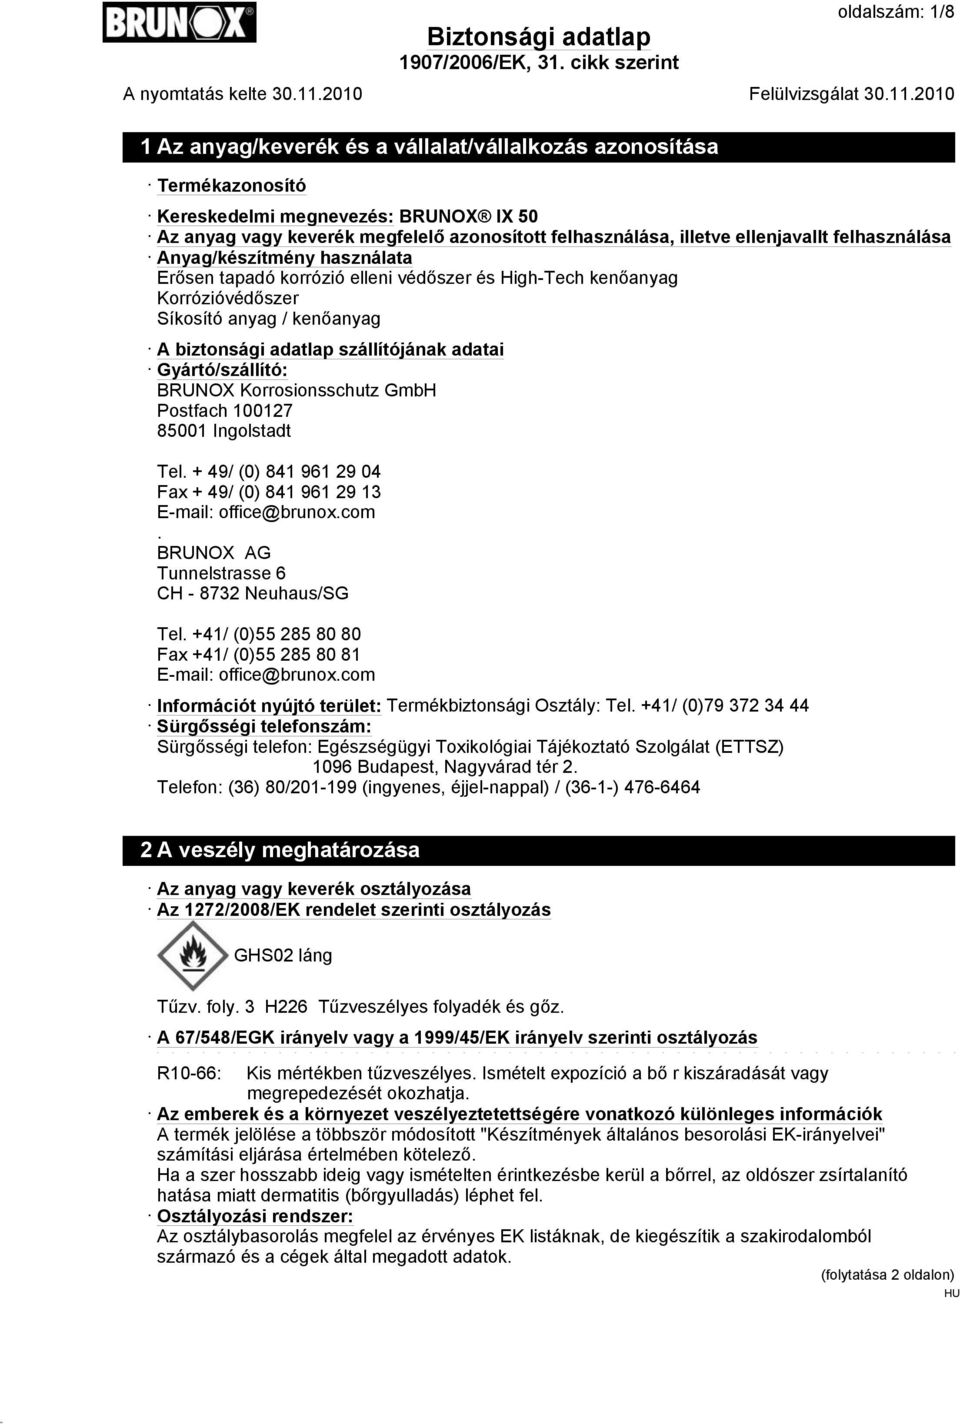 adatai Gyártó/szállító: BRUNOX Korrosionsschutz GmbH Postfach 100127 85001 Ingolstadt Tel. + 49/ (0) 841 961 29 04 Fax + 49/ (0) 841 961 29 13 E-mail: office@brunox.com.